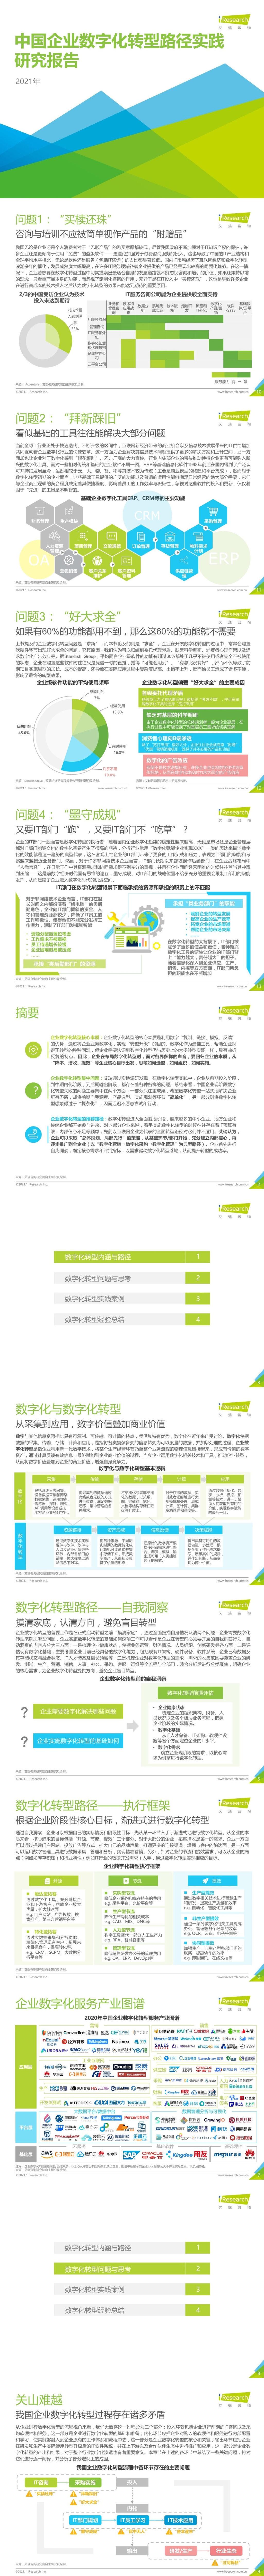 「行业报告」艾瑞咨询：2021年中国企业数字化转型路径实践研究报告